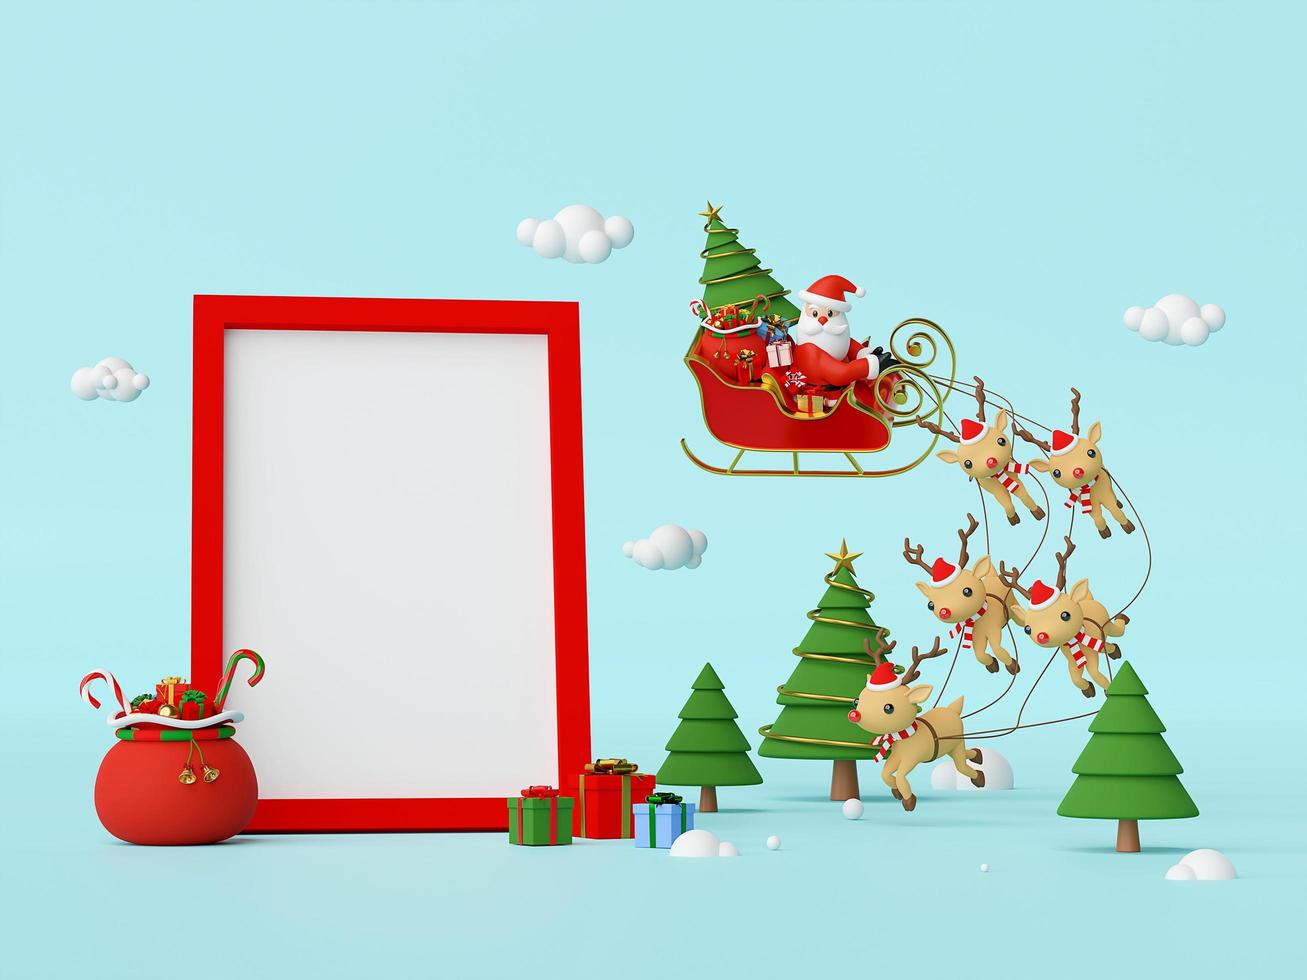 scène van de kerstman op een slee vol kerstcadeaus en getrokken door rendieren met lege ruimte in frame, 3D-rendering foto